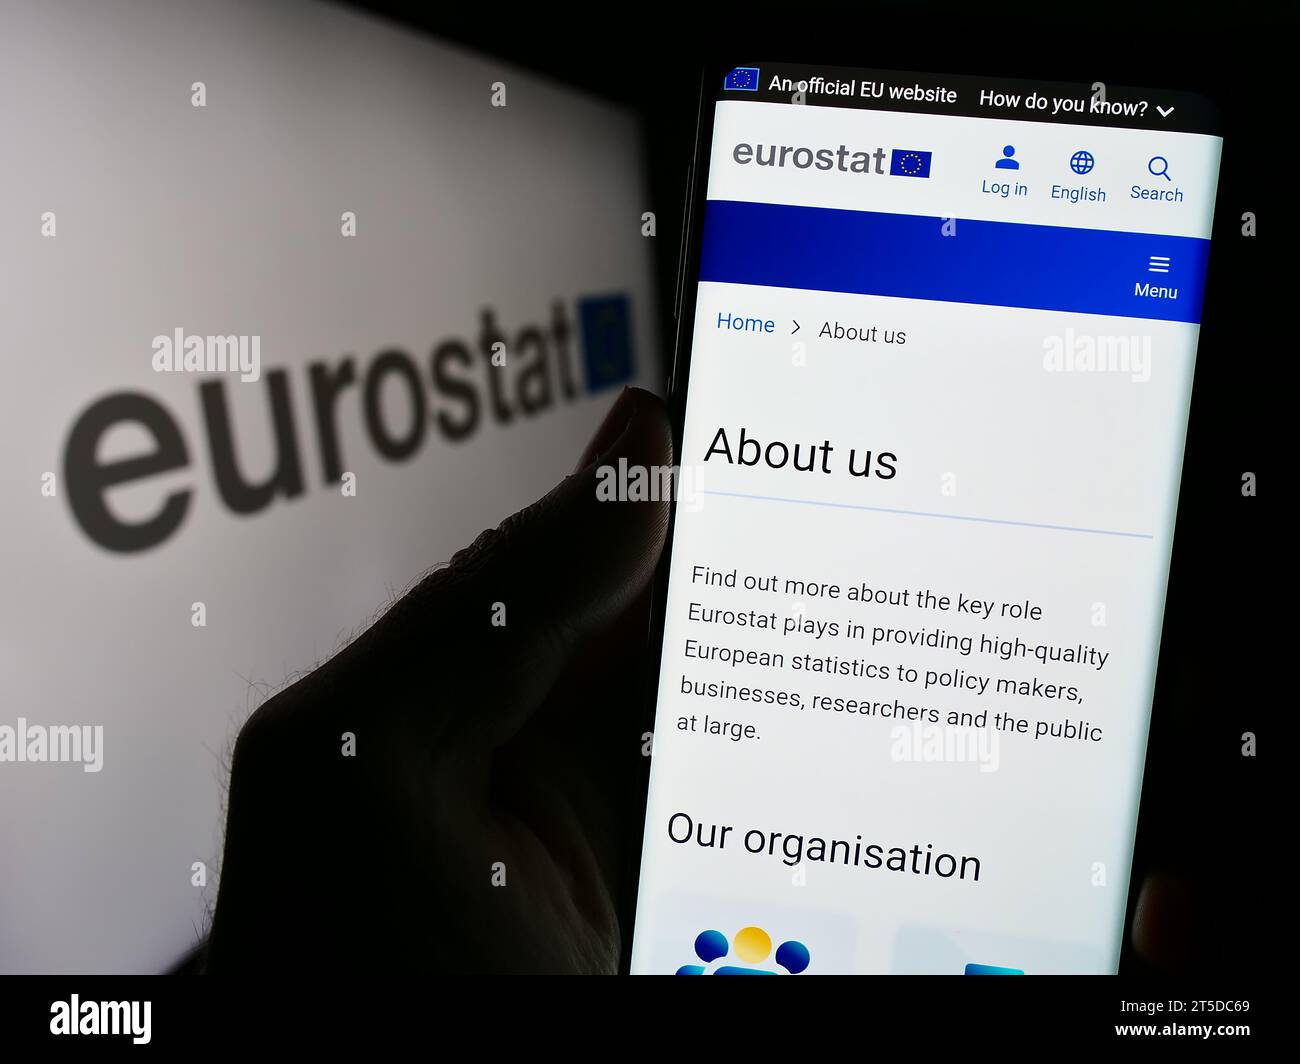 Persona in possesso di smartphone con pagina web dell'Istituto europeo di statistica Eurostat davanti al logo. Concentrarsi sul centro del display del telefono. Foto Stock